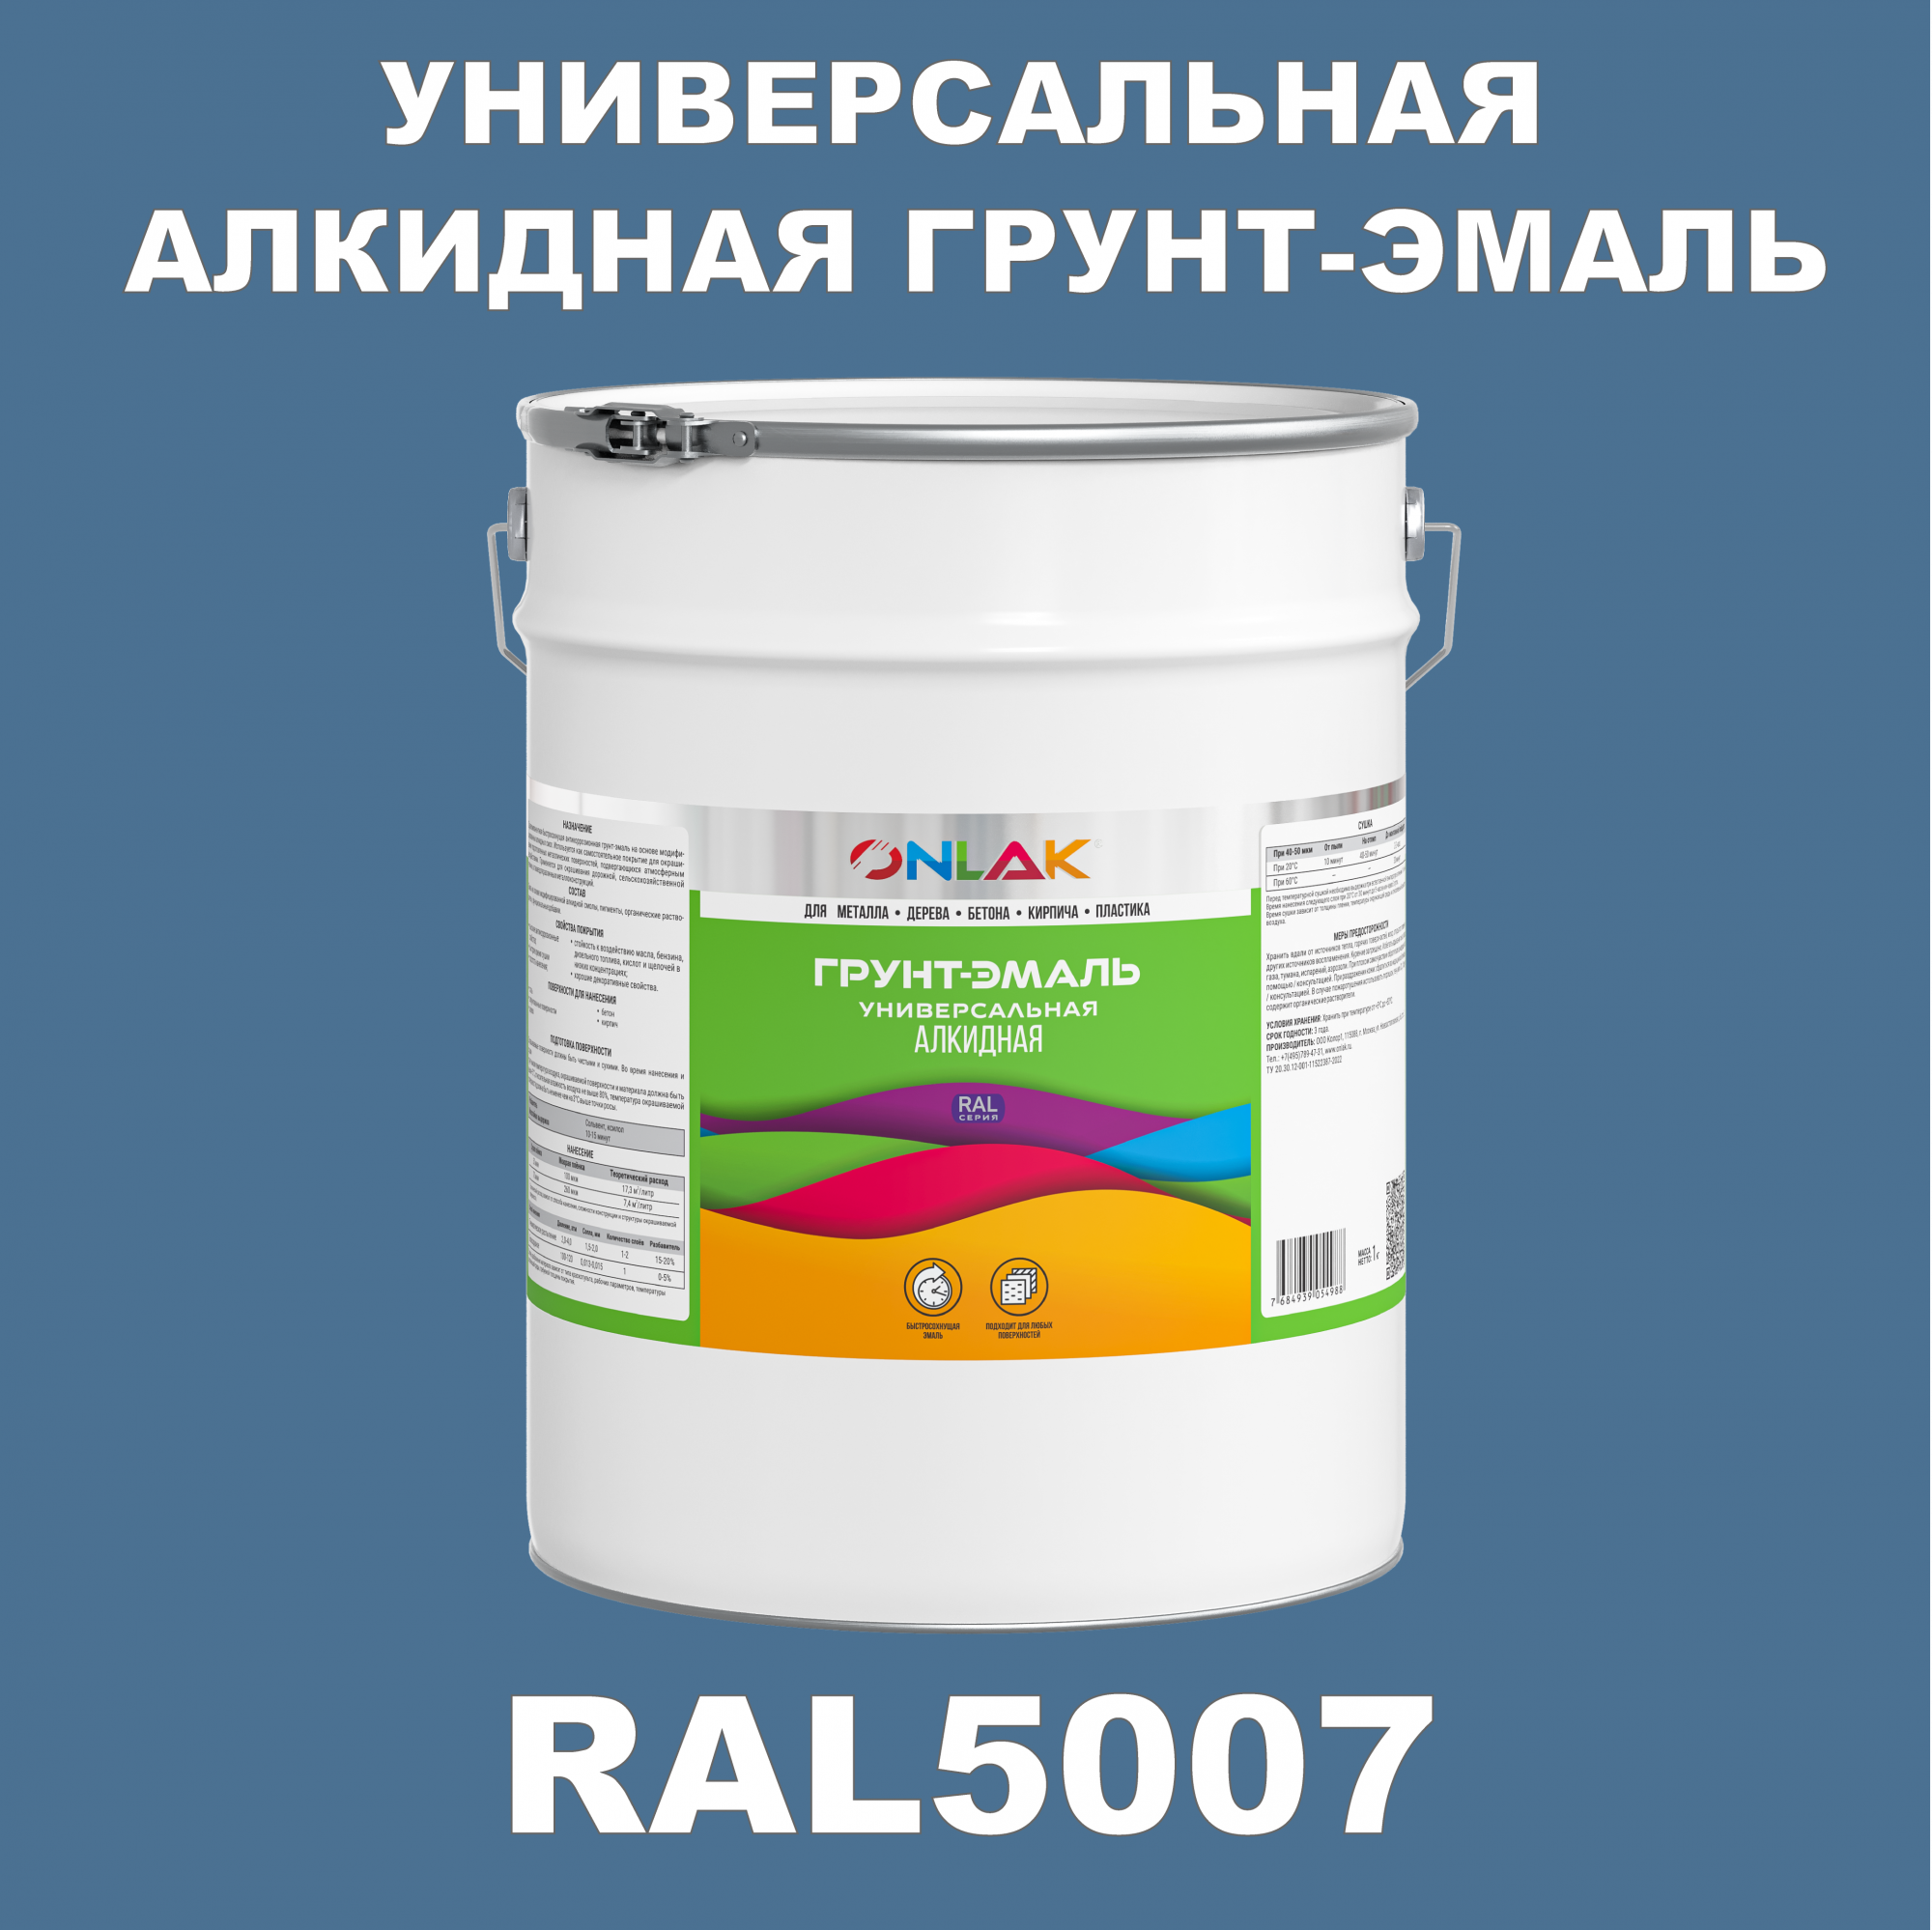 Грунт-эмаль ONLAK 1К RAL5007 антикоррозионная алкидная по металлу по ржавчине 20 кг грунт эмаль yollo по ржавчине алкидная серая 0 9 кг